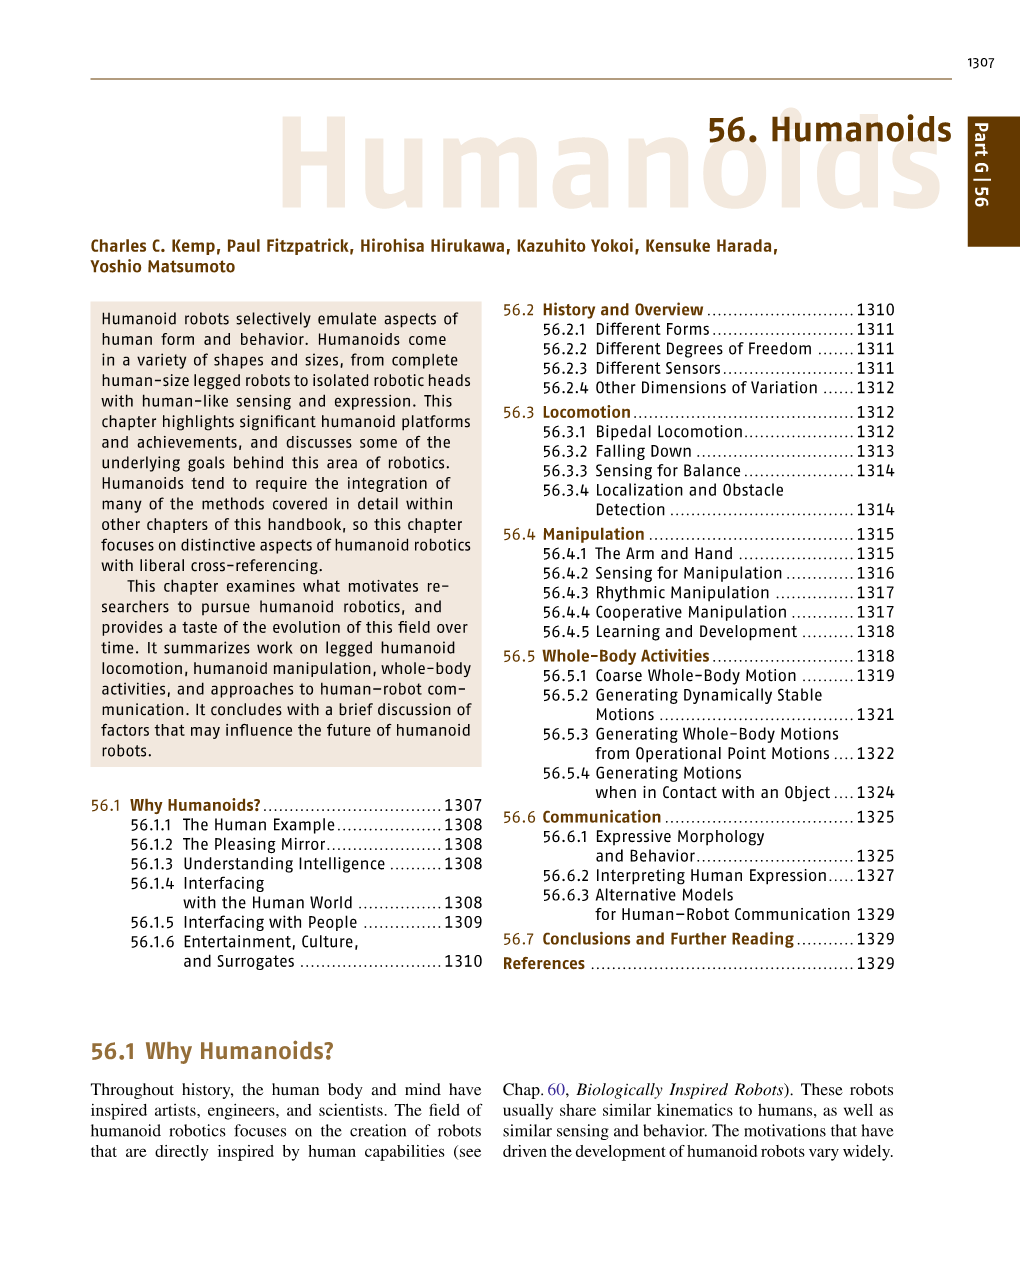 56. Humanoids G Part Humanoids 56 Charles C